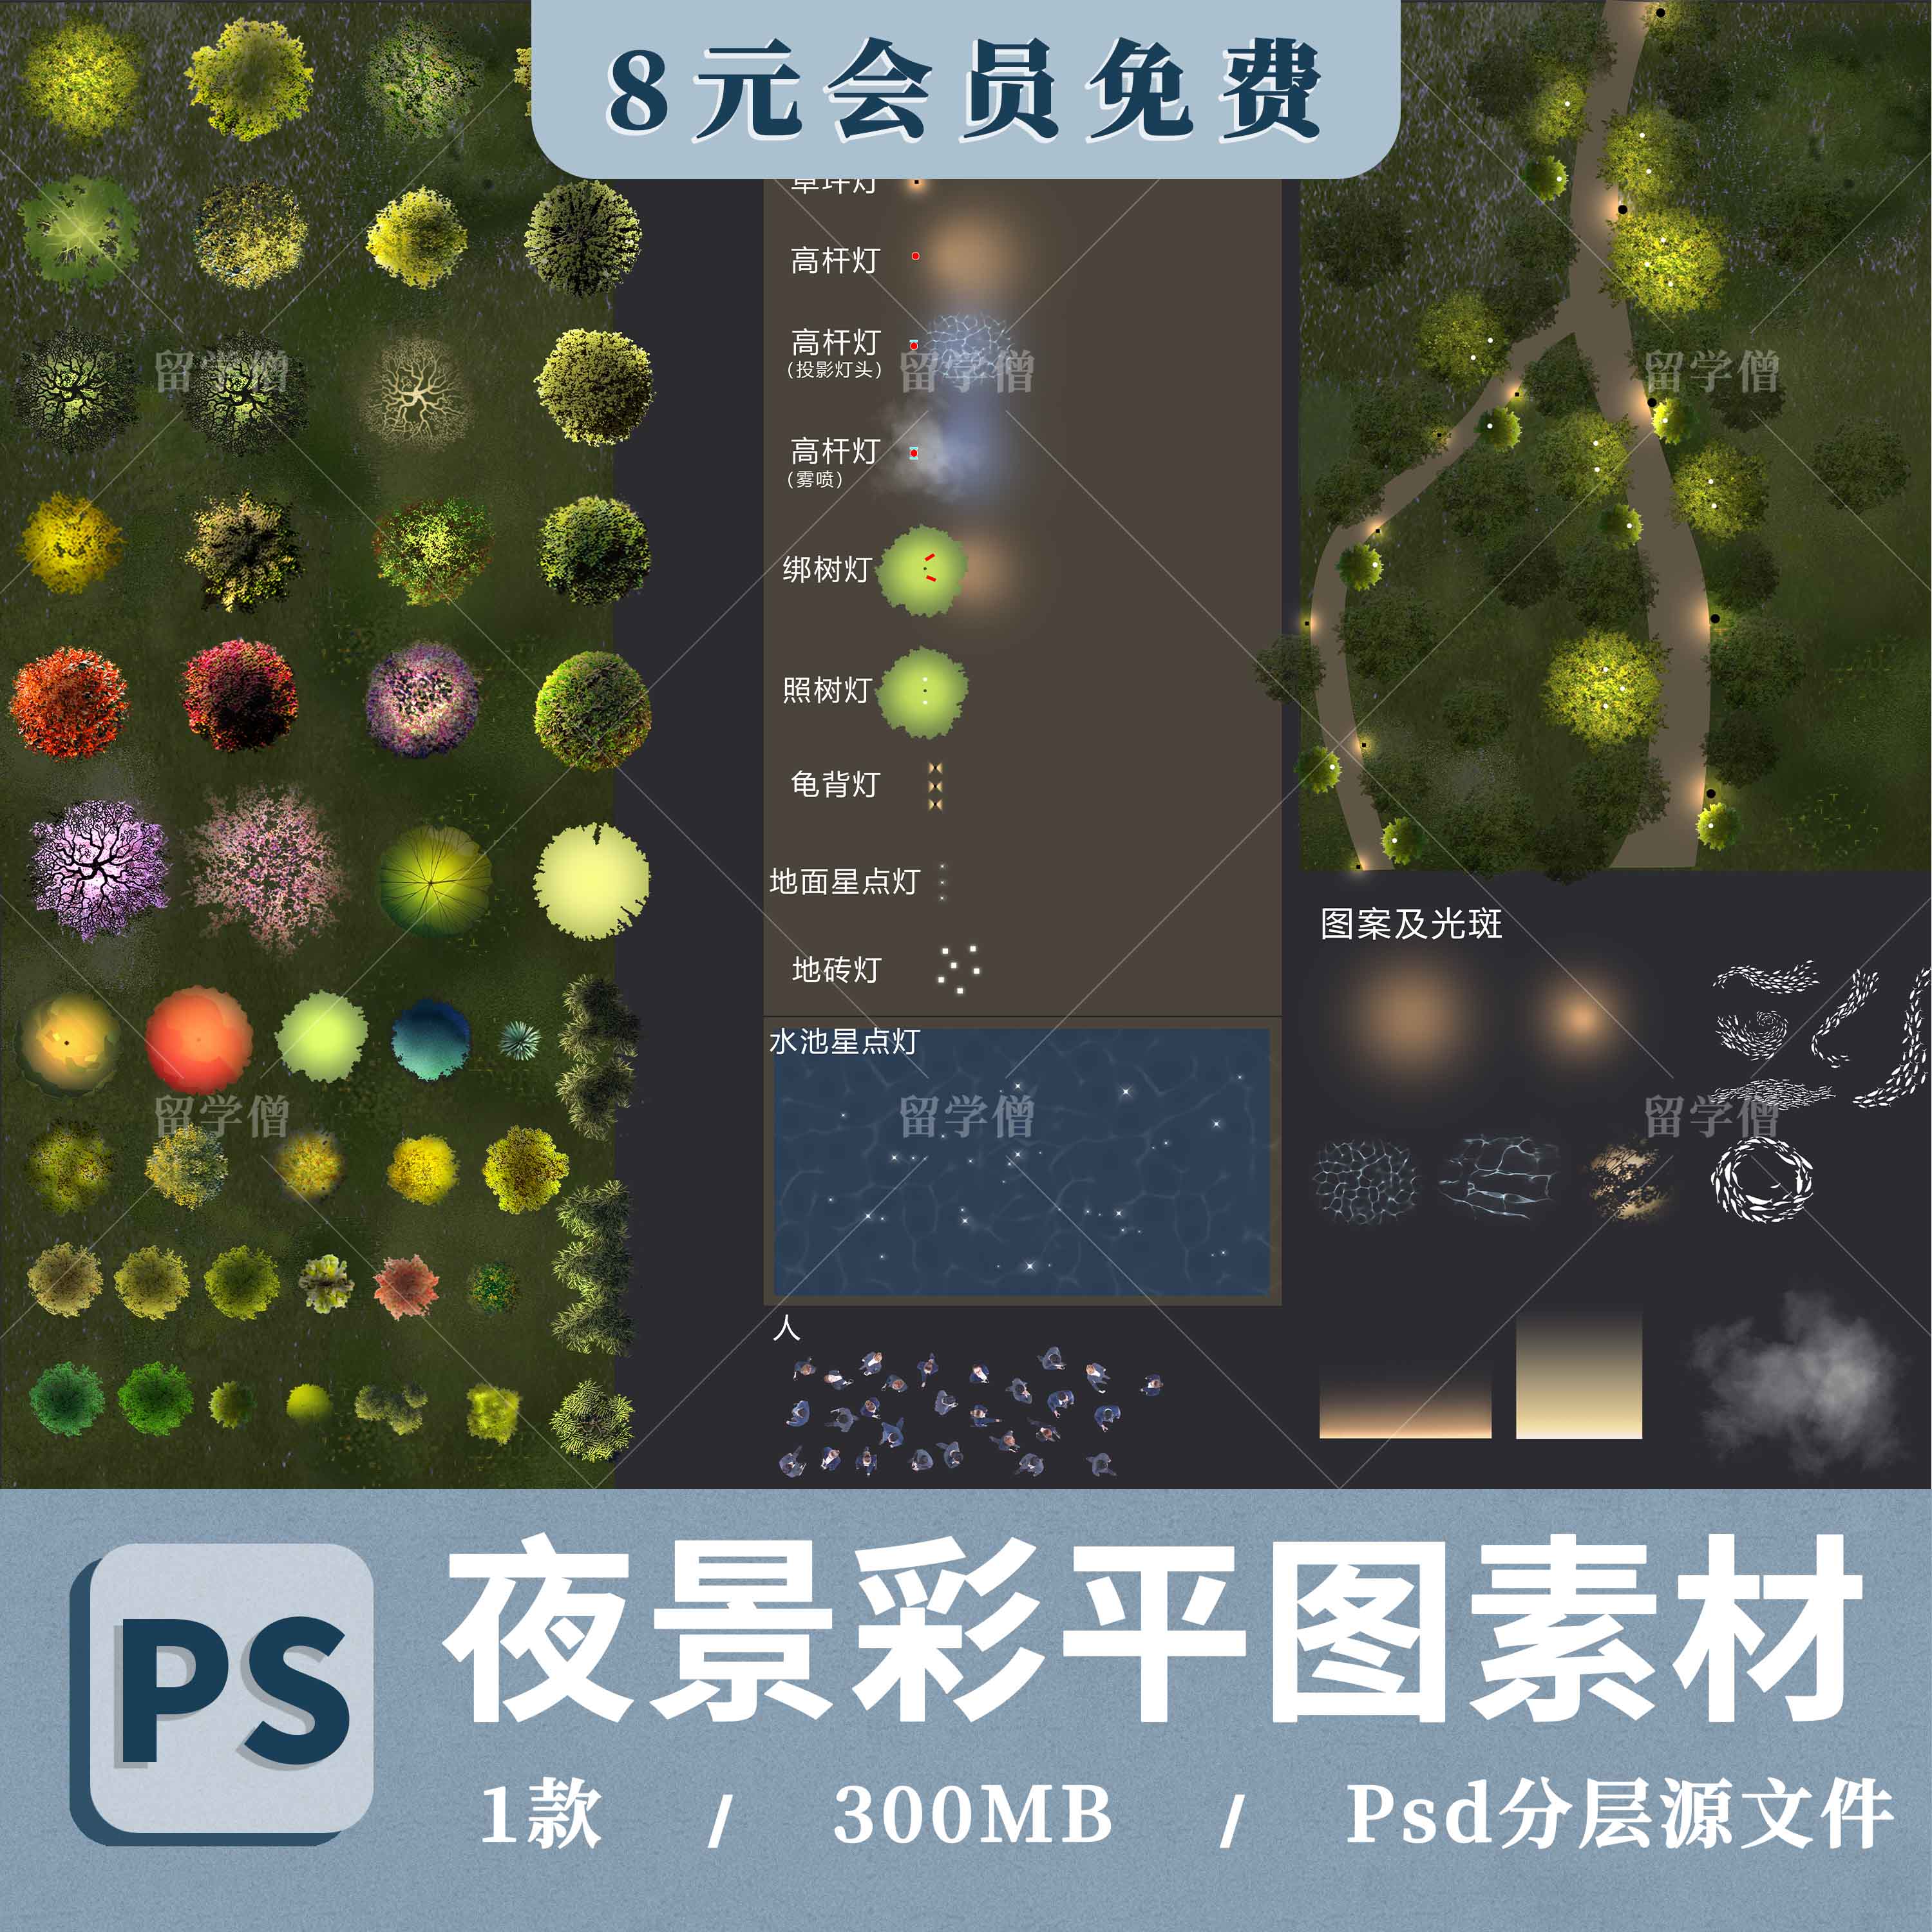 园林景观彩平图夜景彩平亮化照明分析图灯光植物PS素材psd图例